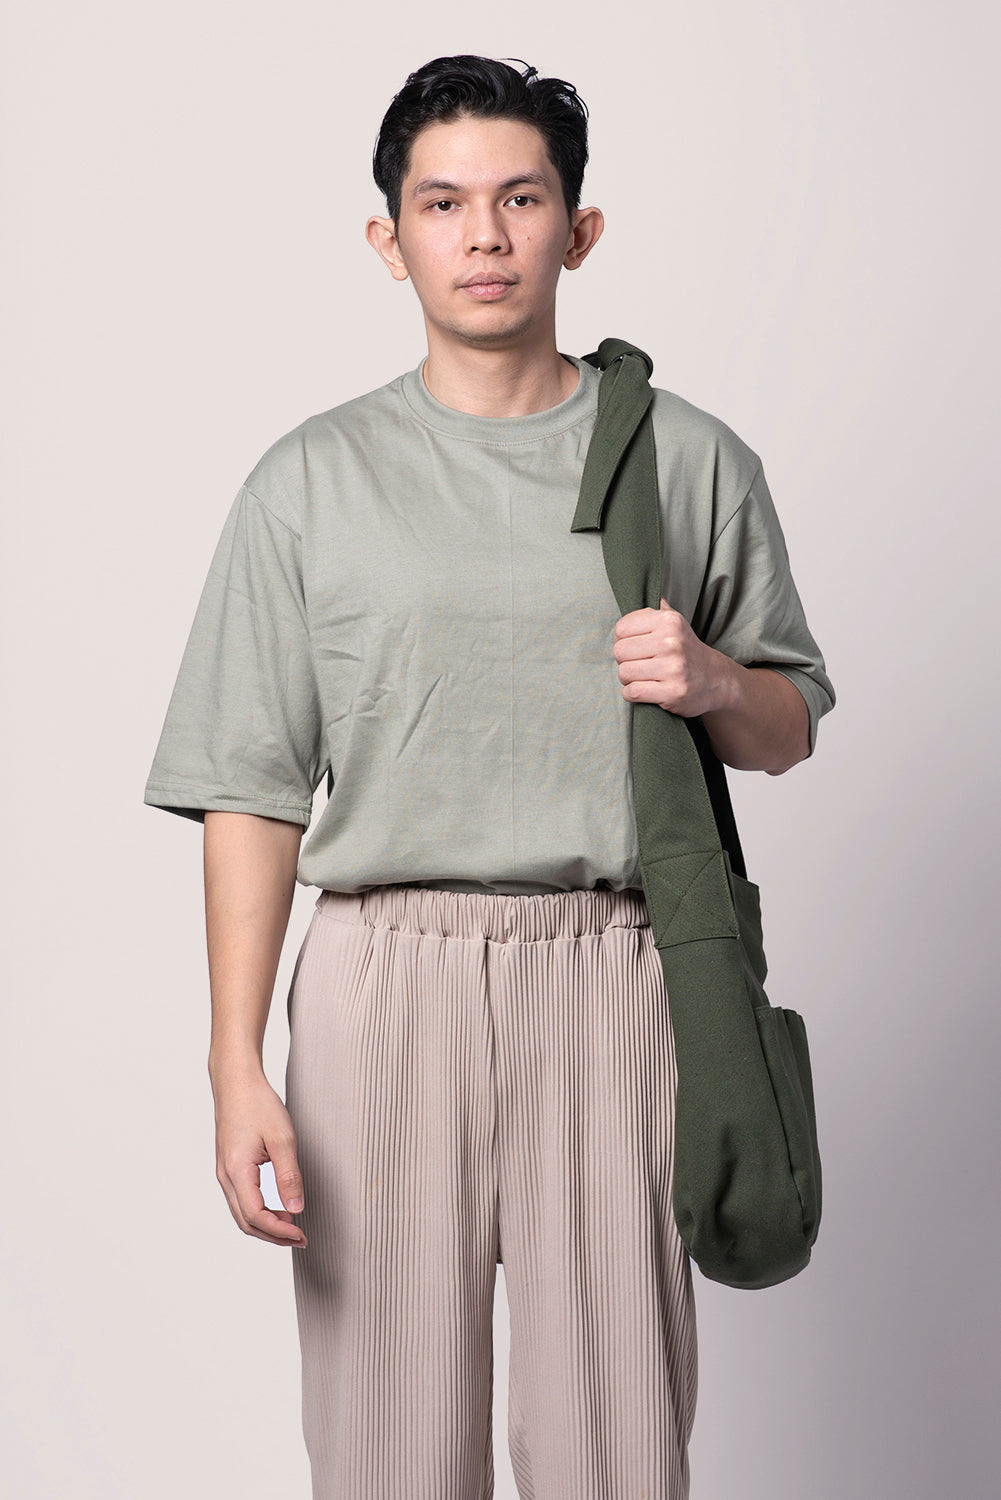 Olive Tsuno Multi-wear Bag